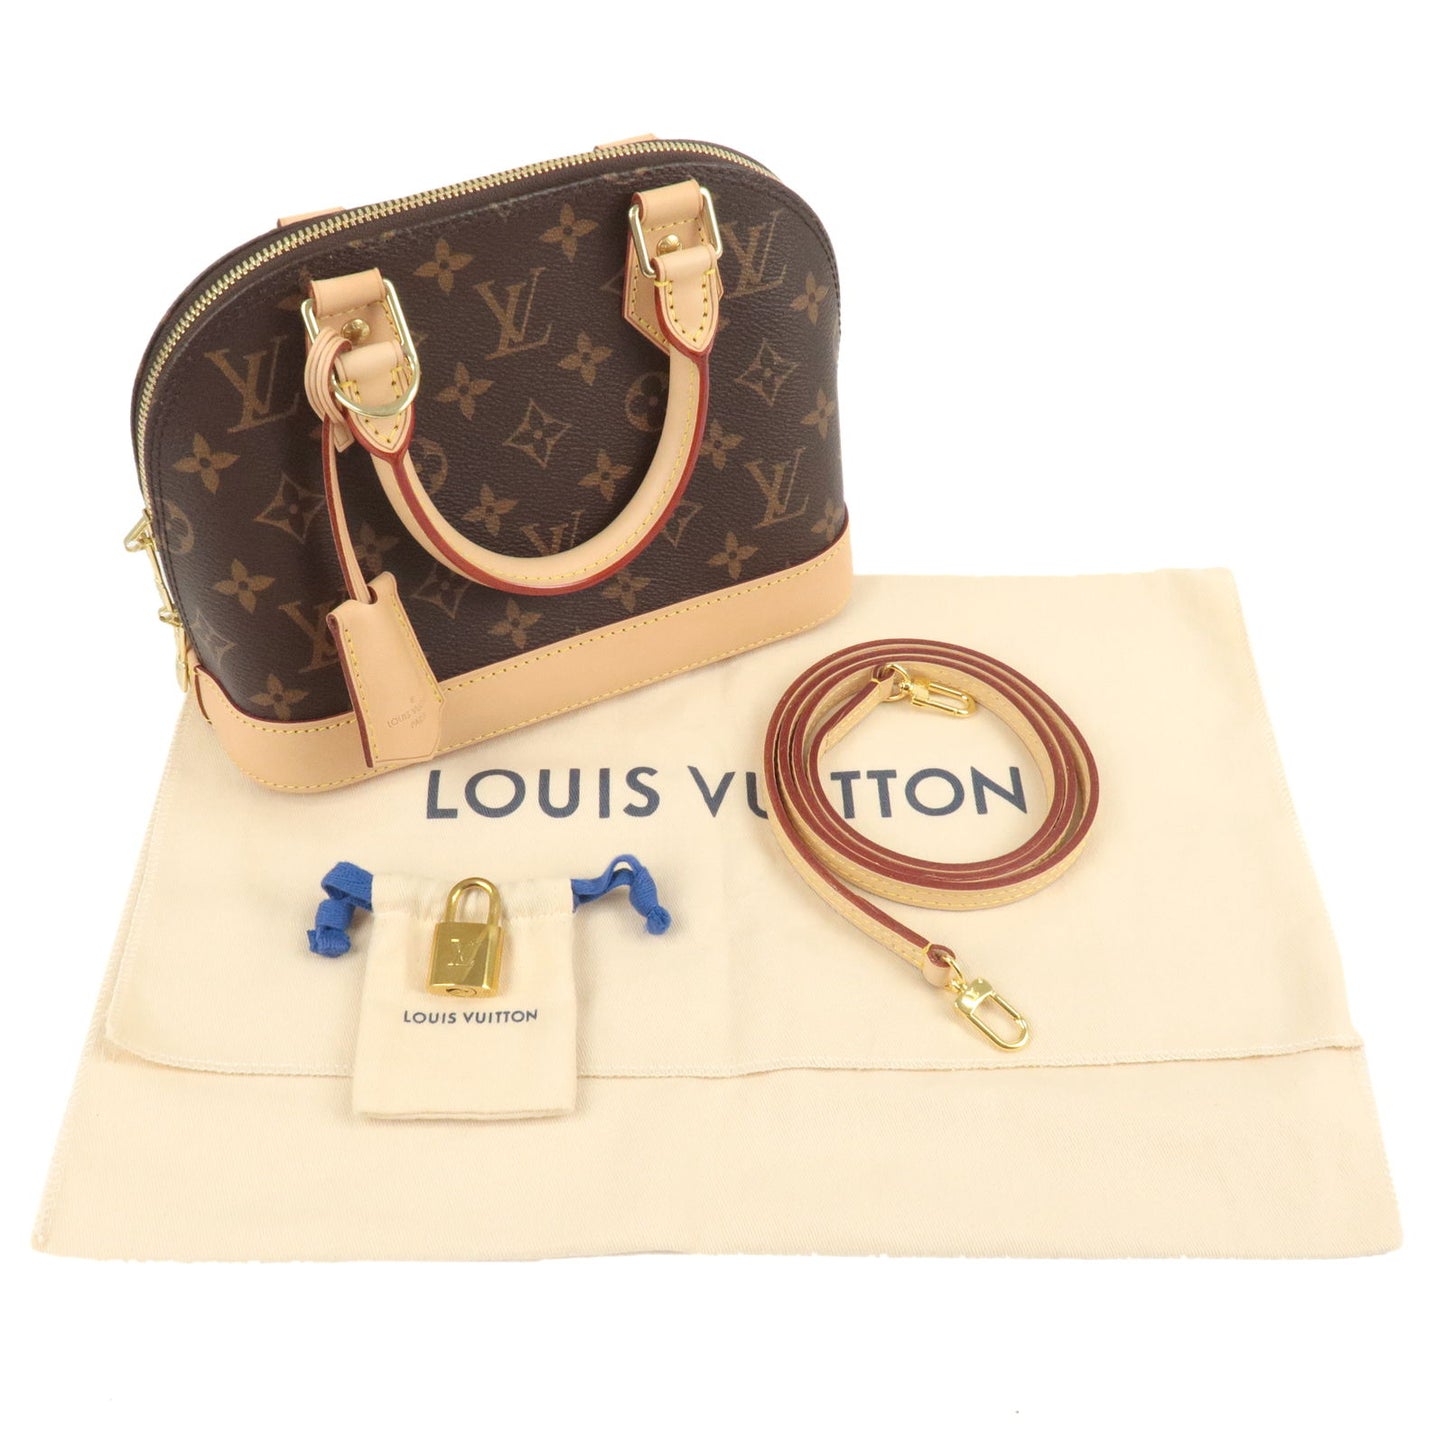 Shop Louis Vuitton ALMA 2020 SS Alma Bb (M53152) by LILY-ROSEMELODY